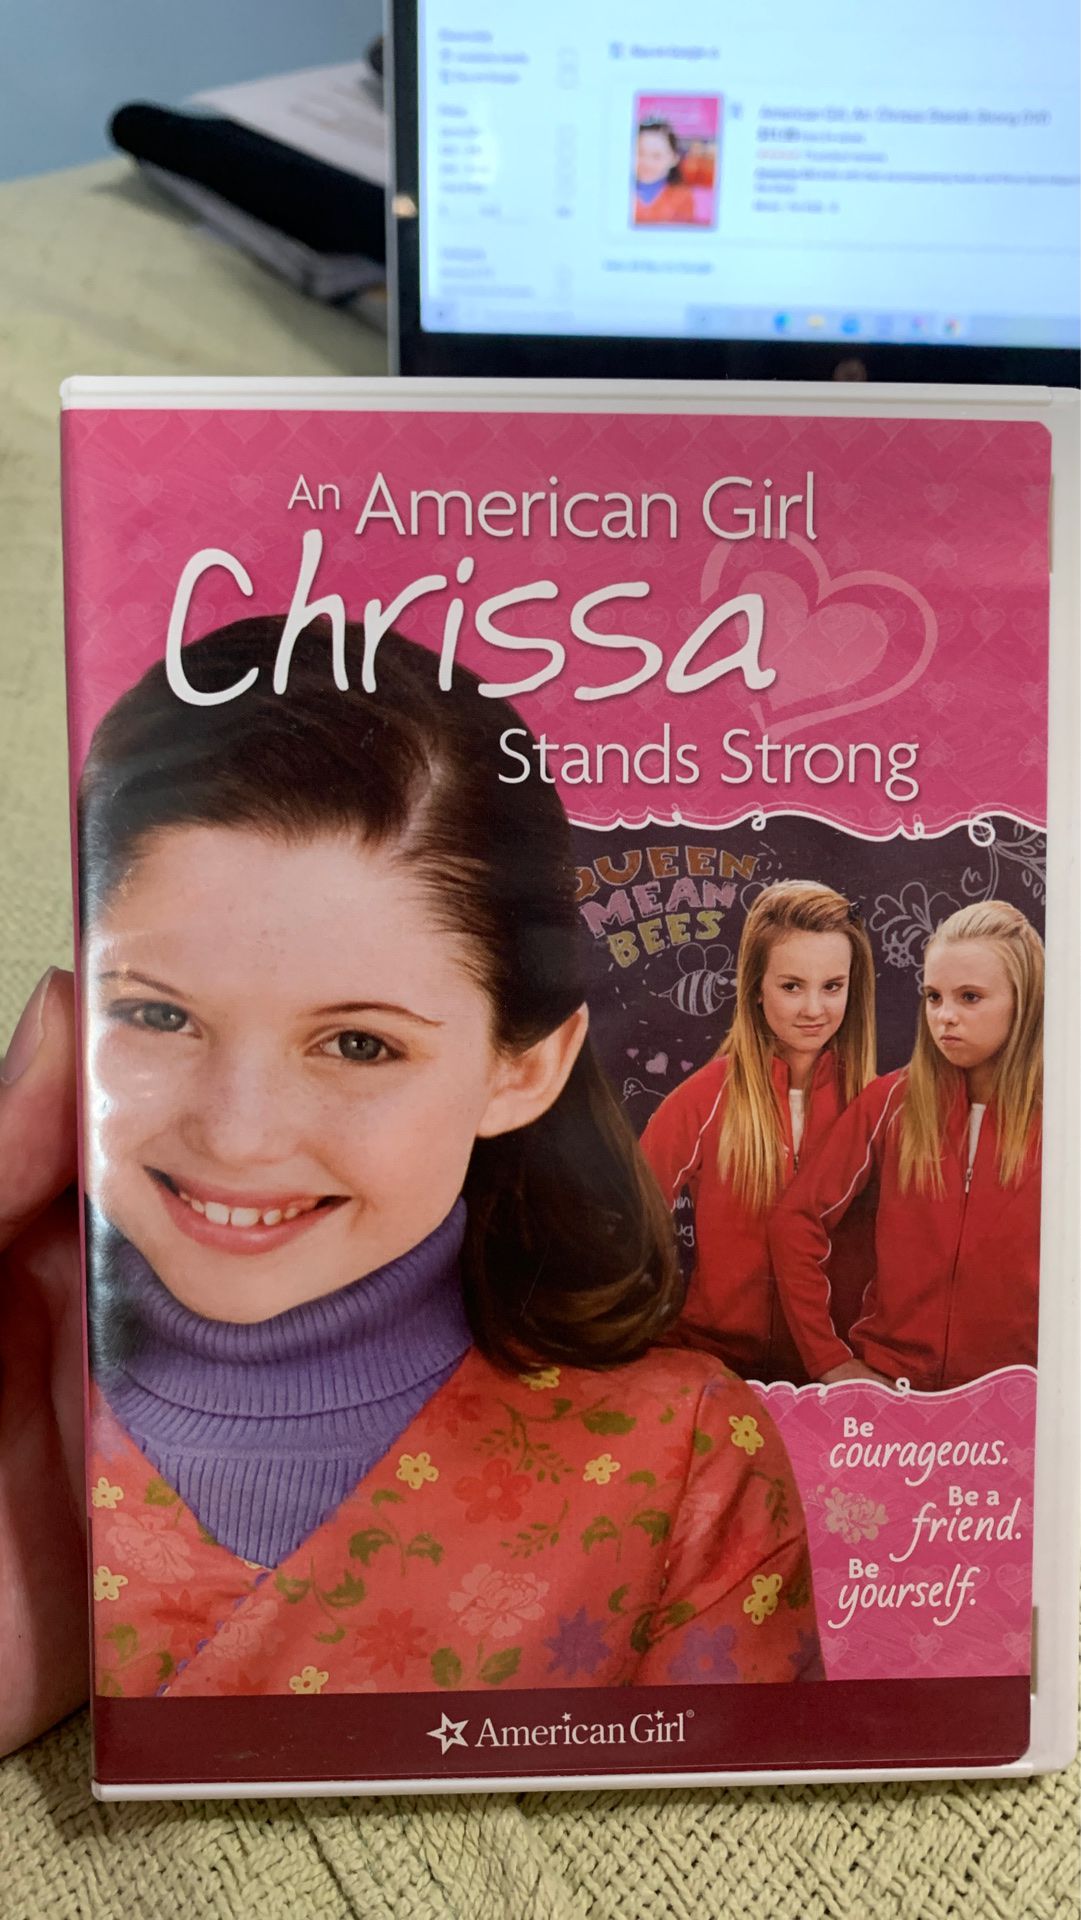 An American Girl Chrissa Stands String DVD